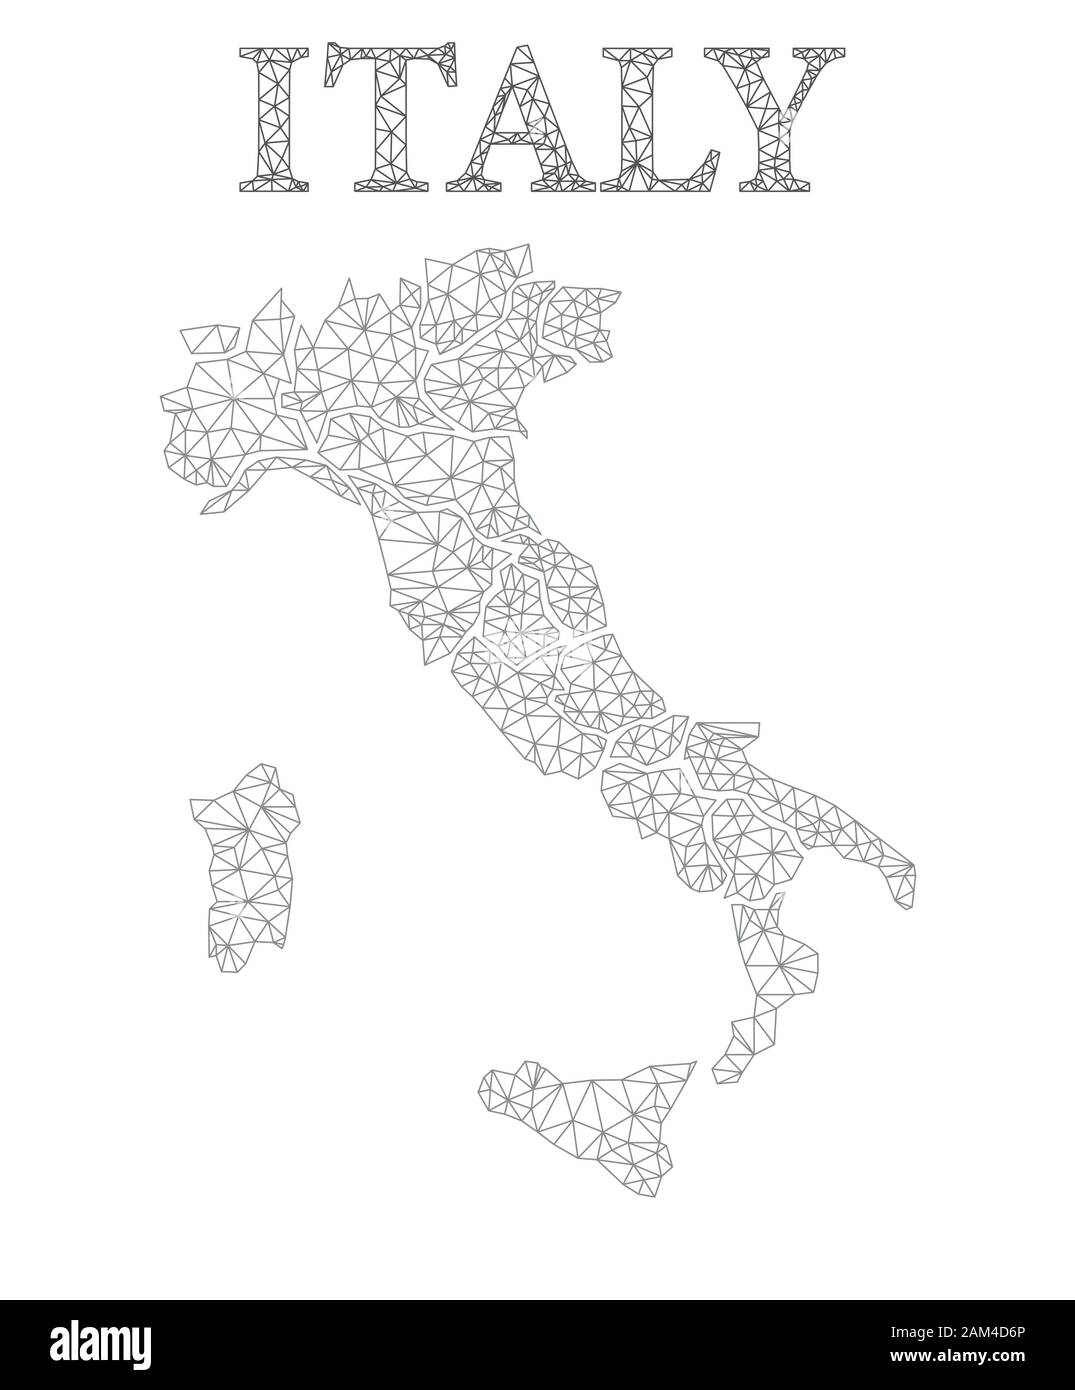 Carte Lowpoly De L'Italie Illustration de Vecteur